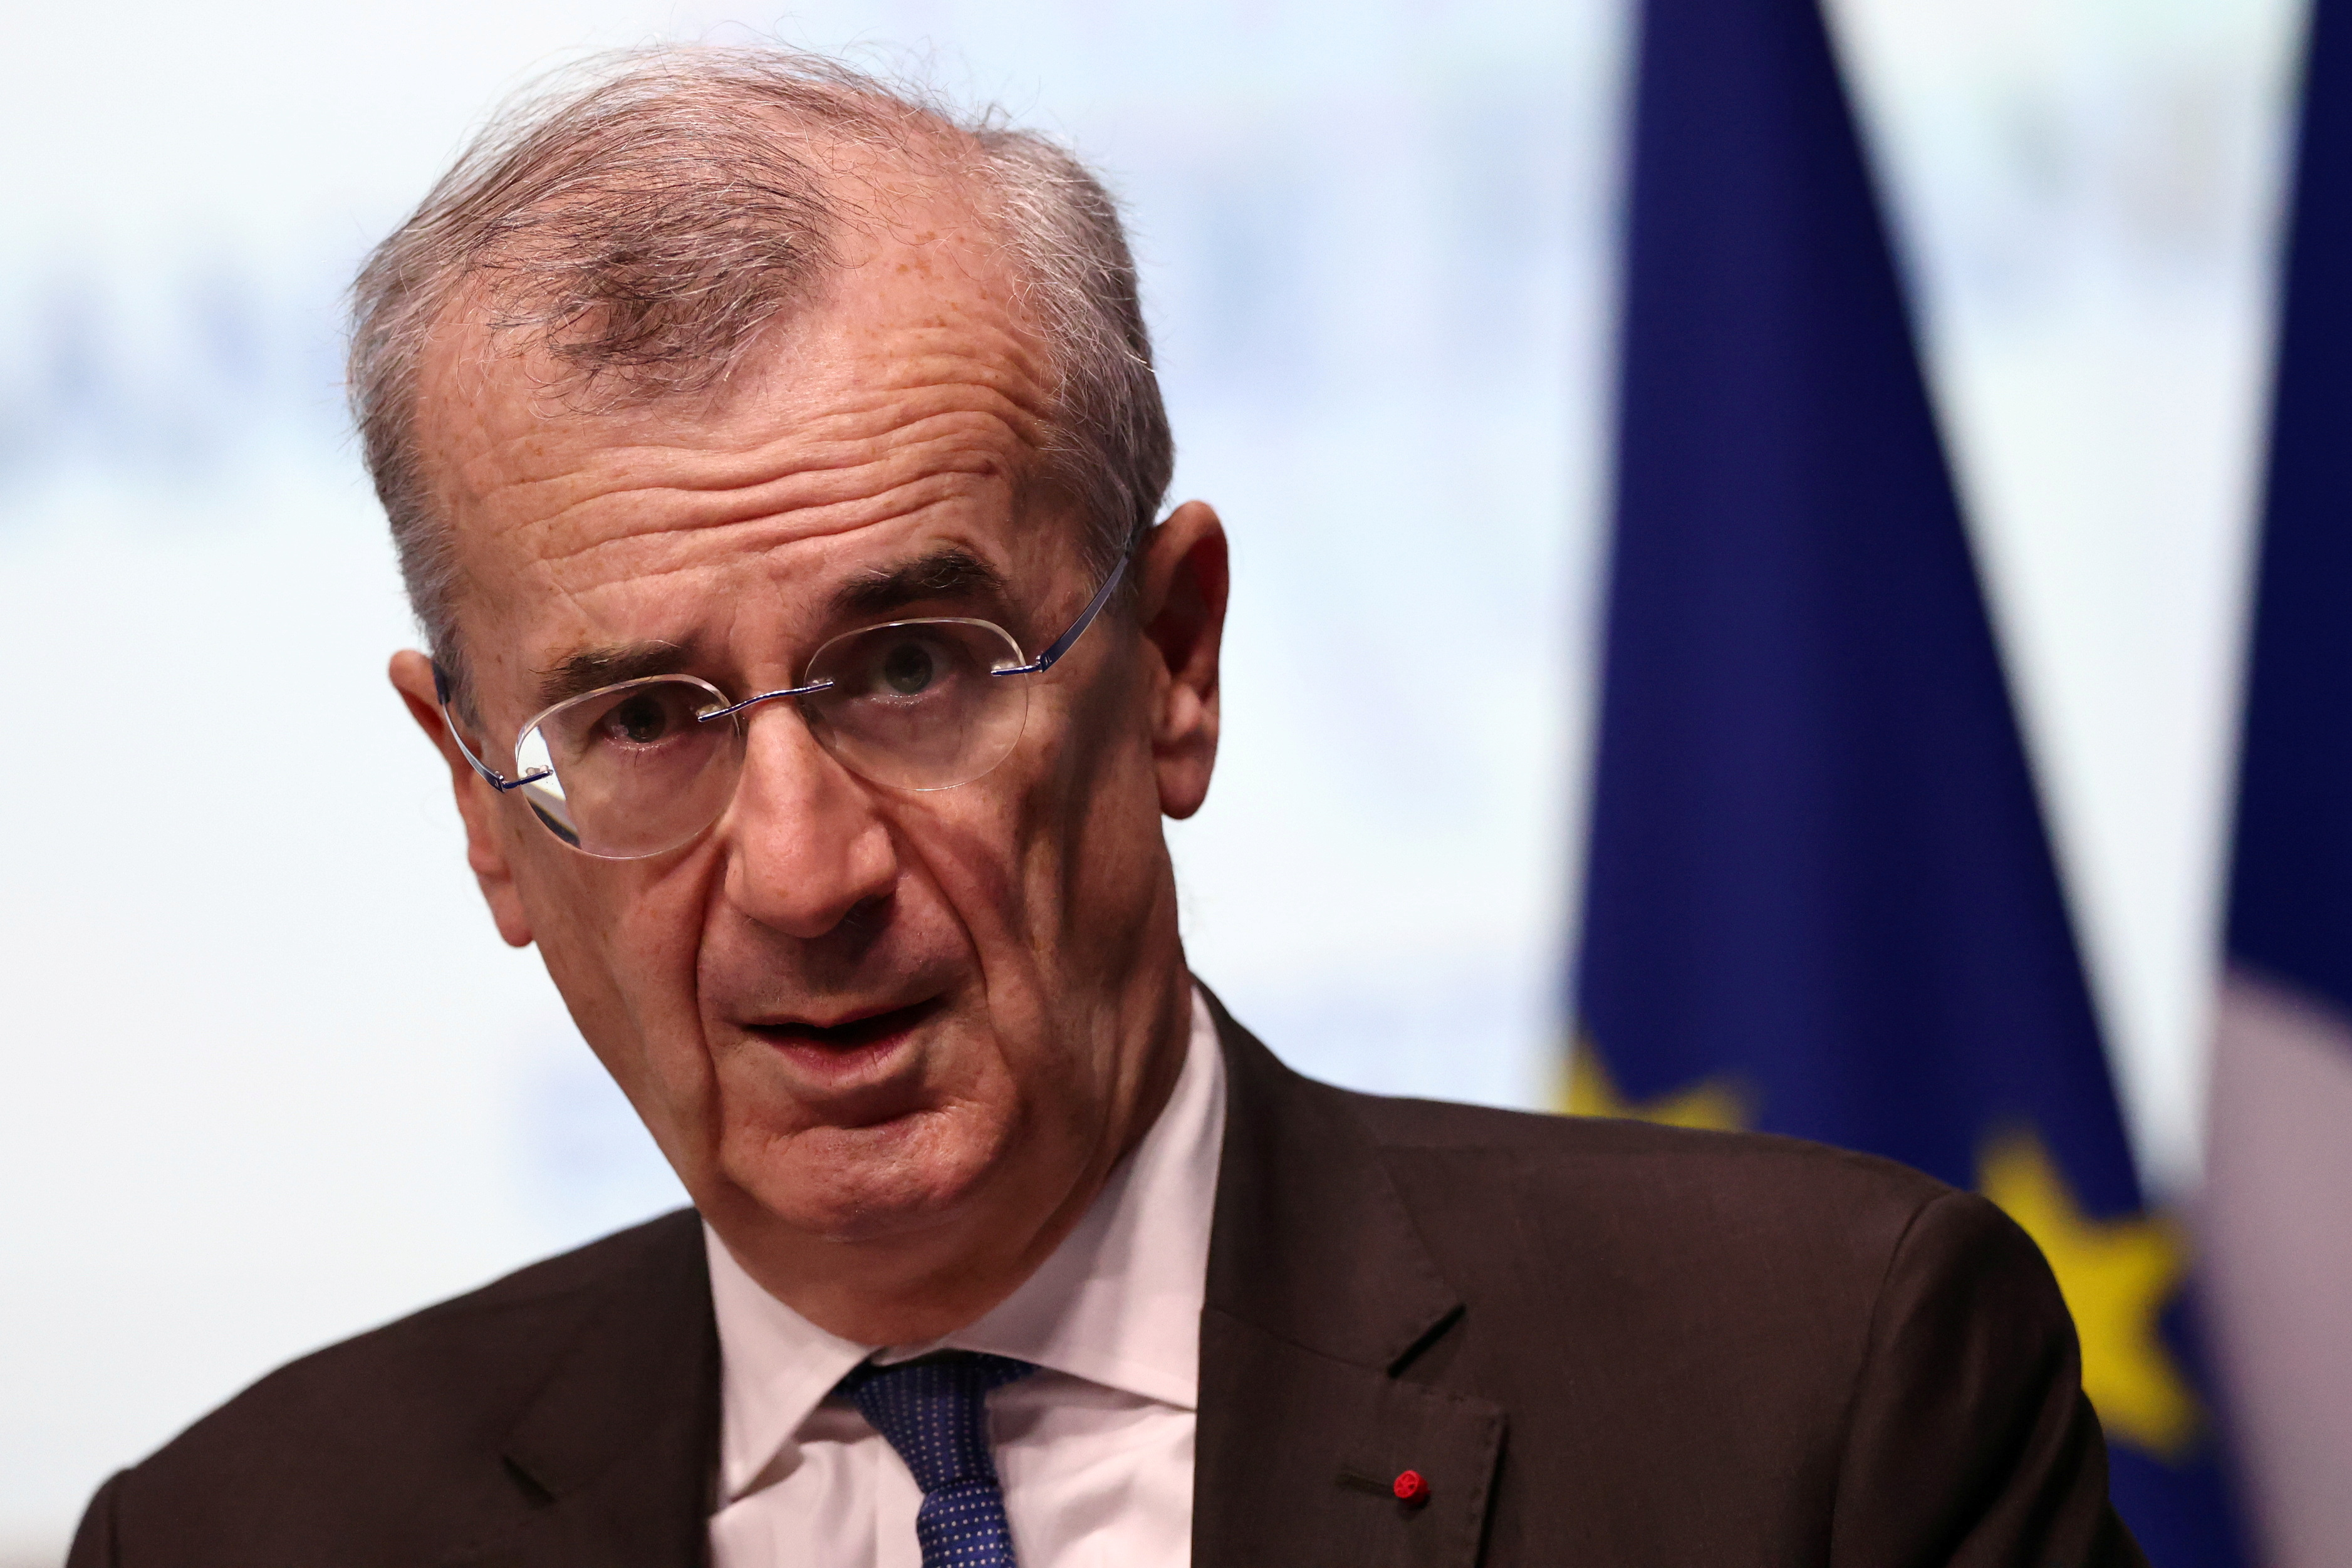 Taux : une baisse « très probable » au printemps, avance le gouverneur de la Banque de France